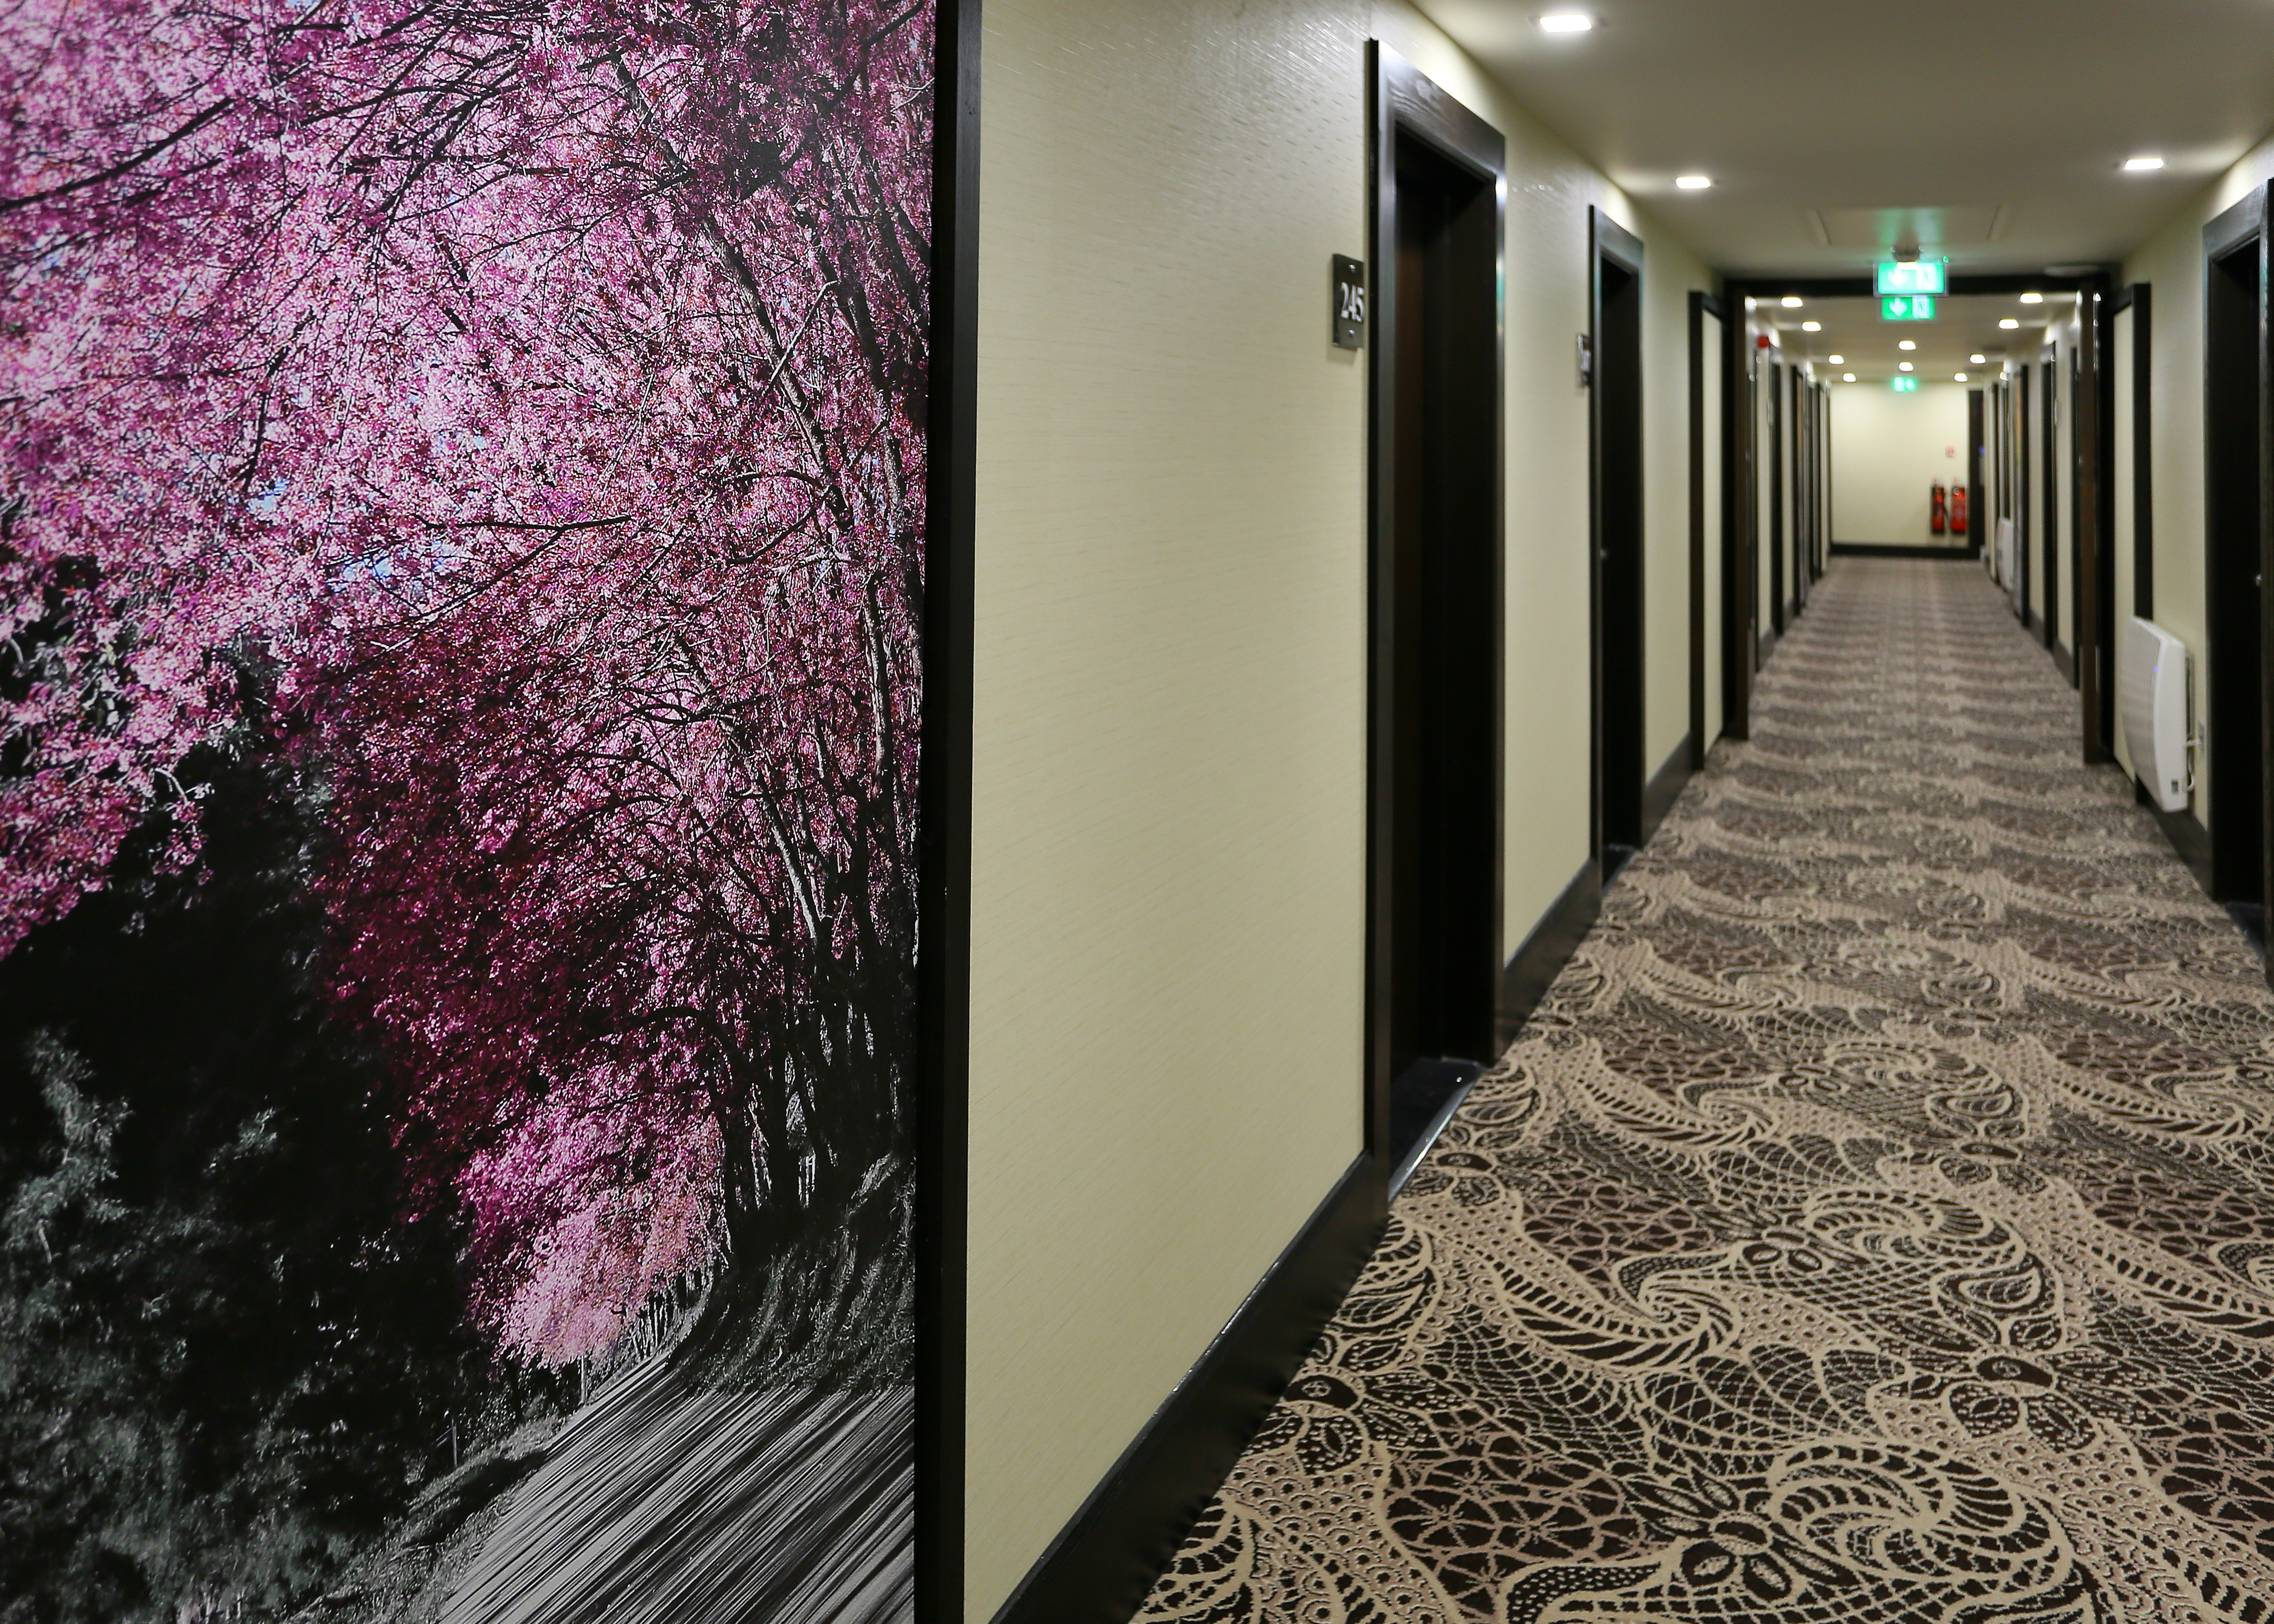 Wall Art and Guest Room Doors in Long Corridor